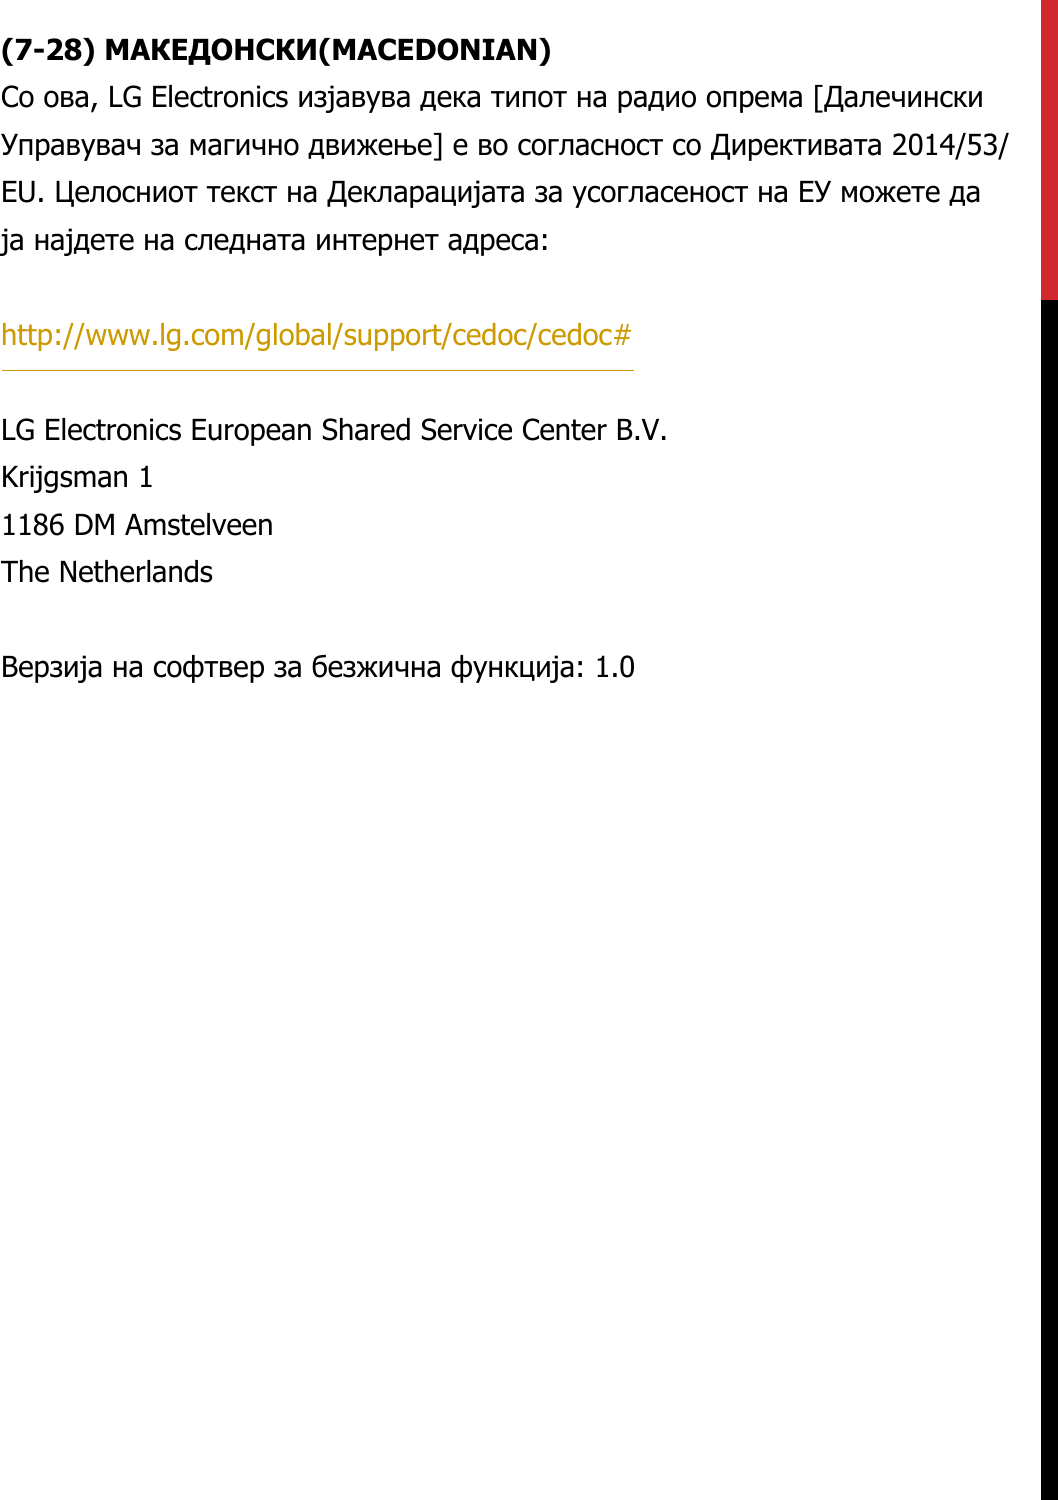 (7-28) МАКЕДОНСКИ(MACEDONIAN)Со ова, LG Electronics изјавува дека типот на радио опрема [Далечински Управувач за магично движење] е во согласност со Директивата 2014/53/EU. Целосниот текст на Декларацијата за усогласеност на ЕУ можете да ја најдете на следната интернет адреса:   http://www.lg.com/global/support/cedoc/cedoc#   LG Electronics European Shared Service Center B.V.  Krijgsman 1  1186 DM Amstelveen  The Netherlands   Верзија на софтвер за безжична функција: 1.0